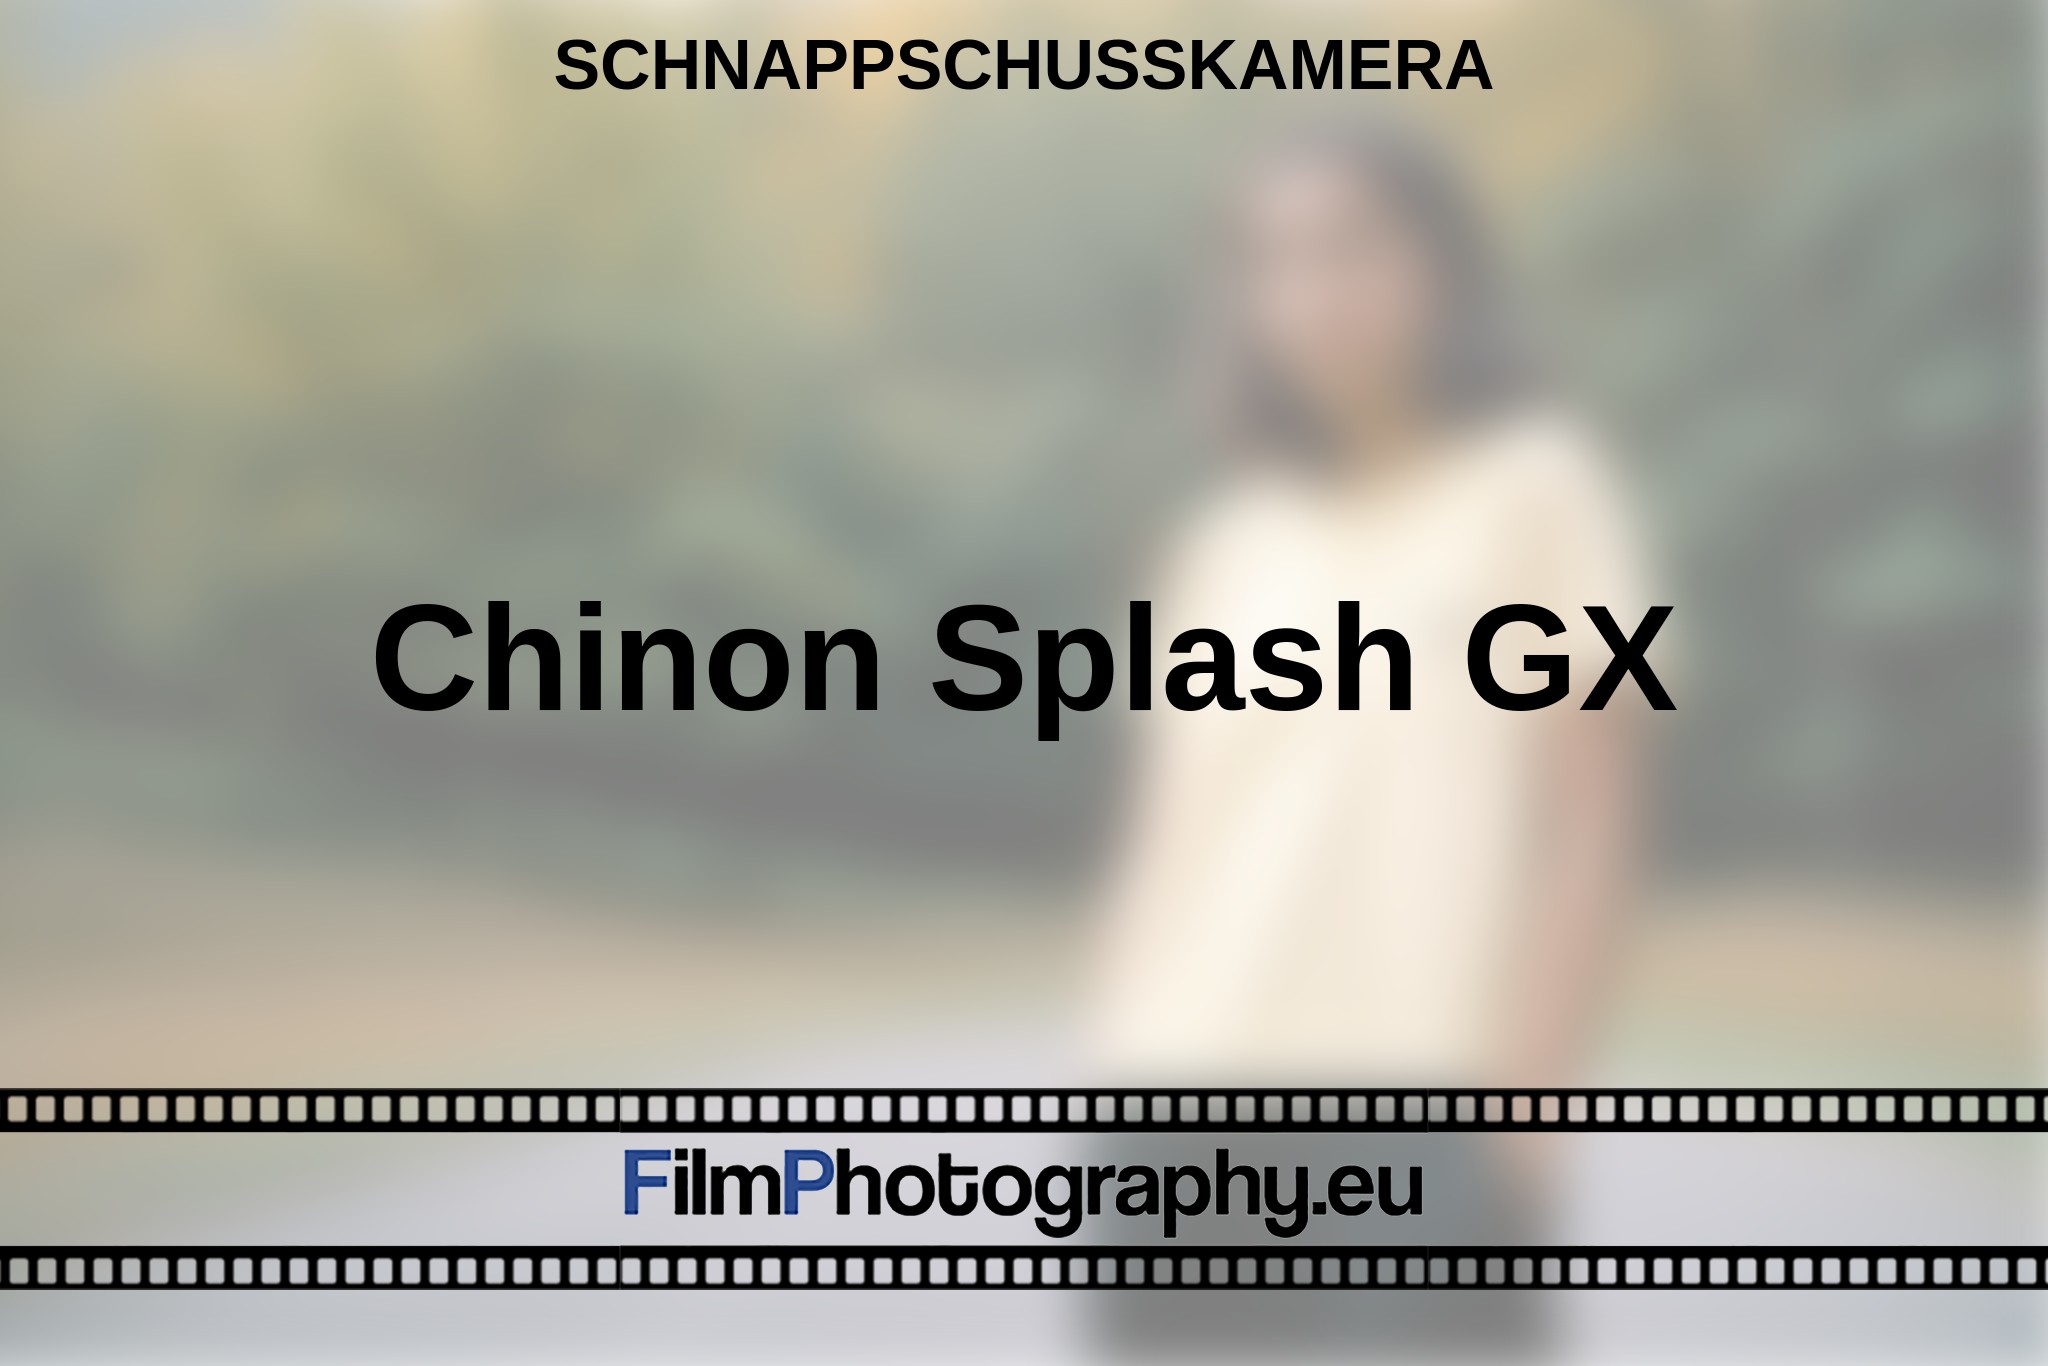 chinon-splash-gx-schnappschusskamera-bnv.jpg